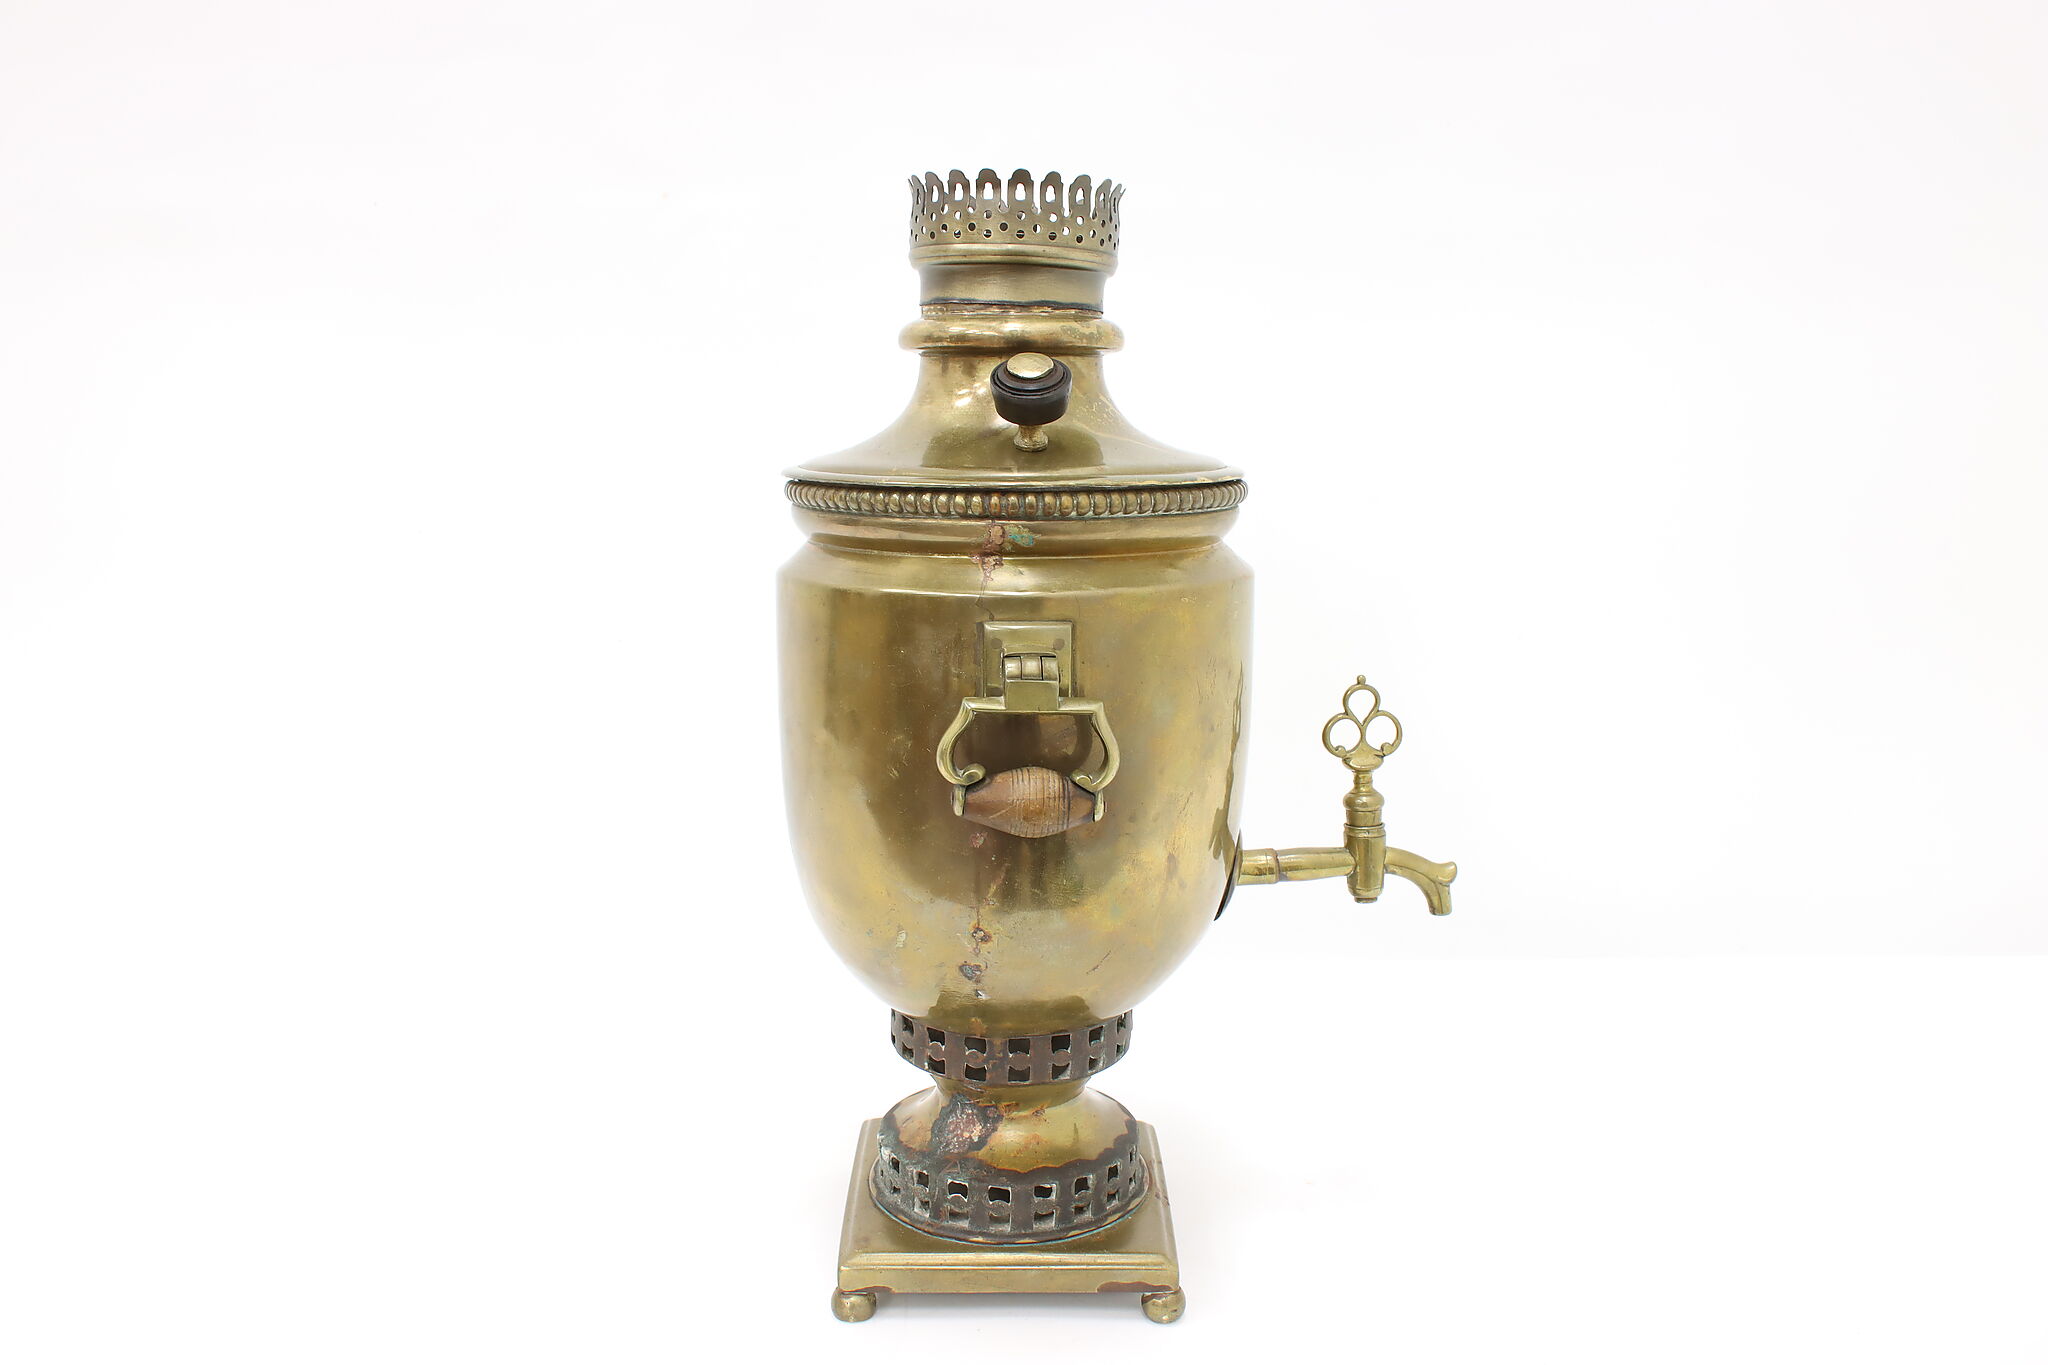 Russian Antique Brass Samovar Tea Kettle